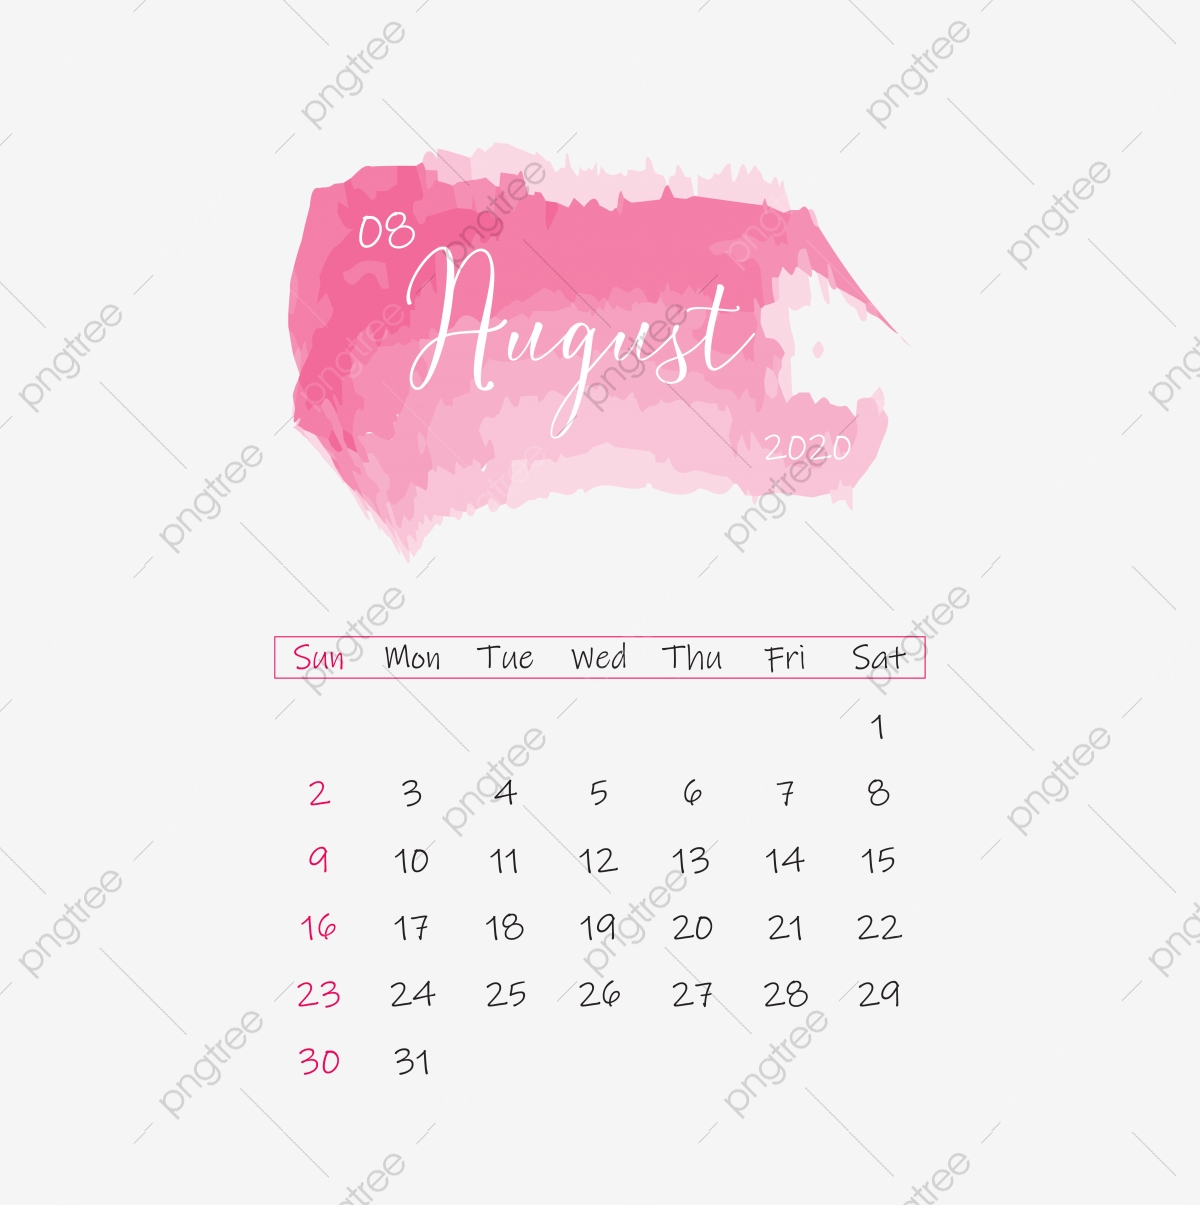 September calendar clipart images free download png transparent background